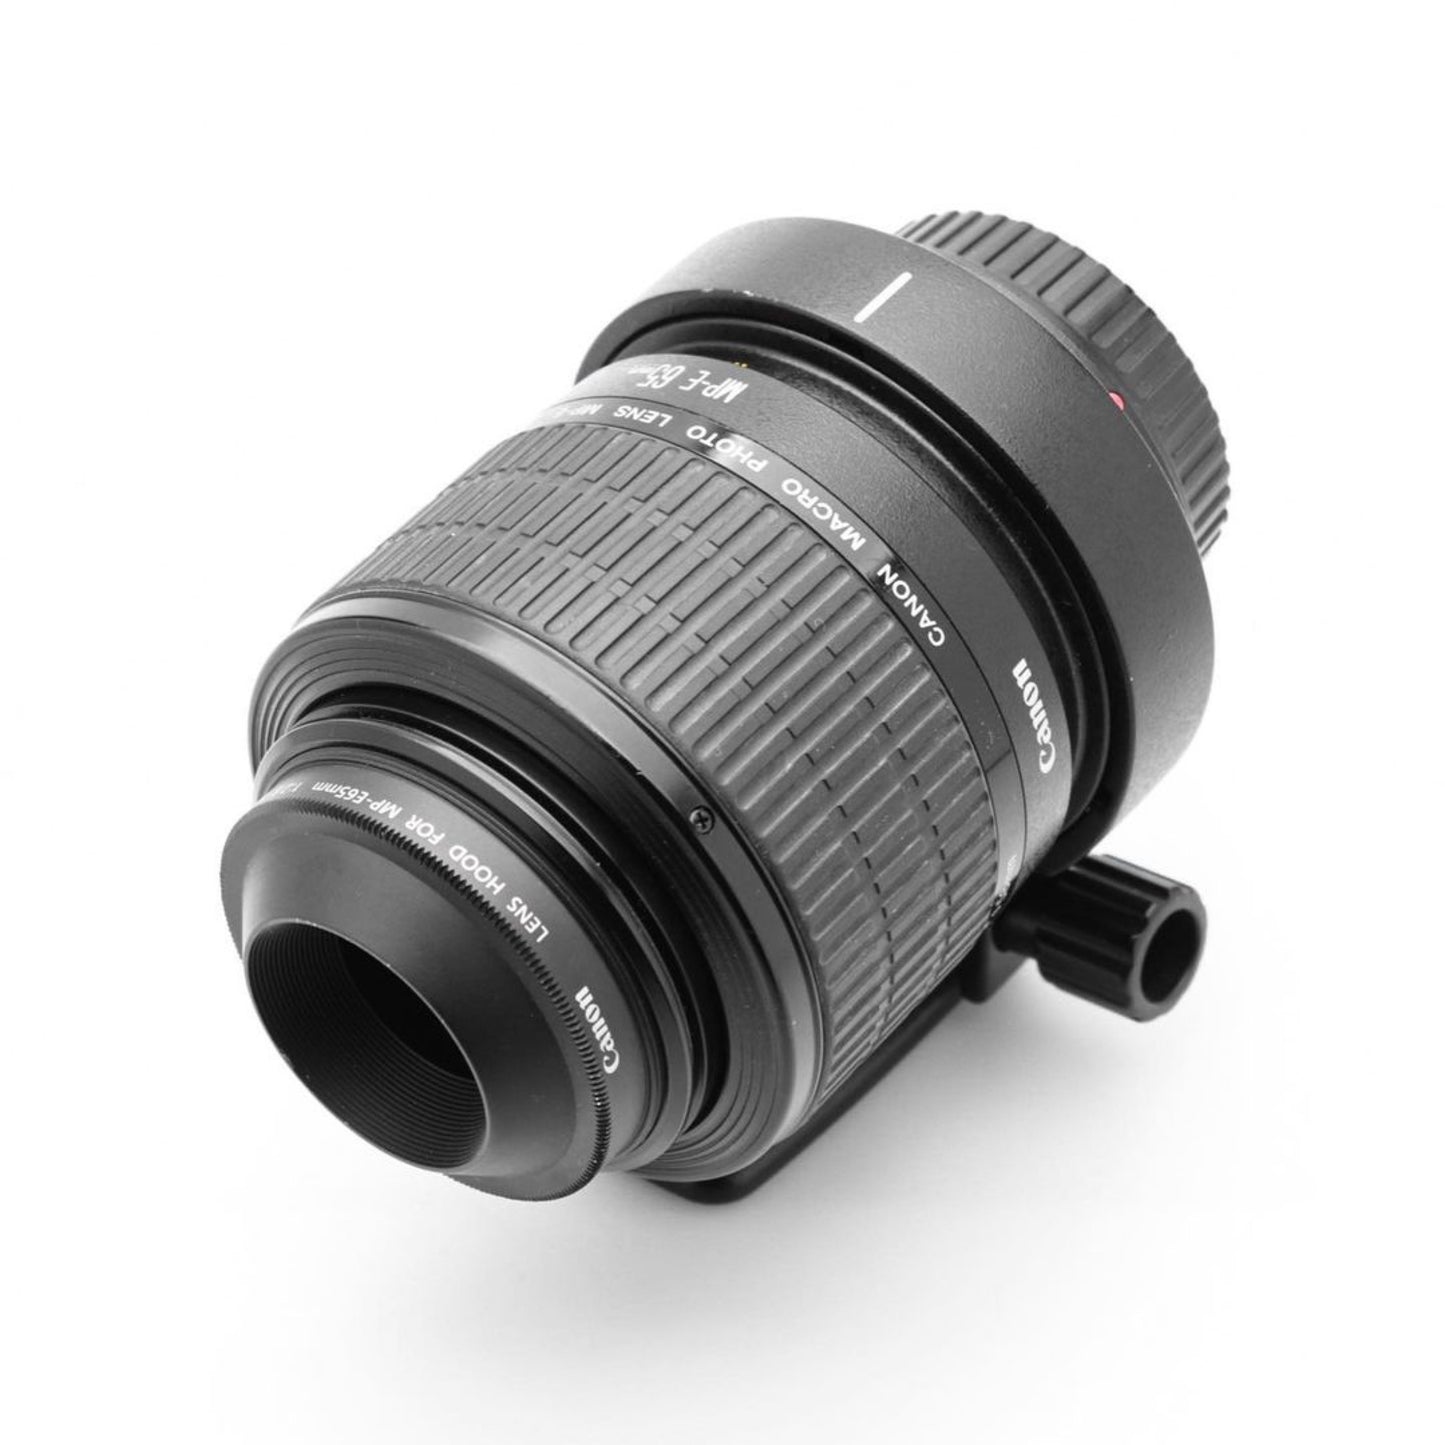 Used Canon MP-E 65mm f/2.8 1-5X Macro Lens